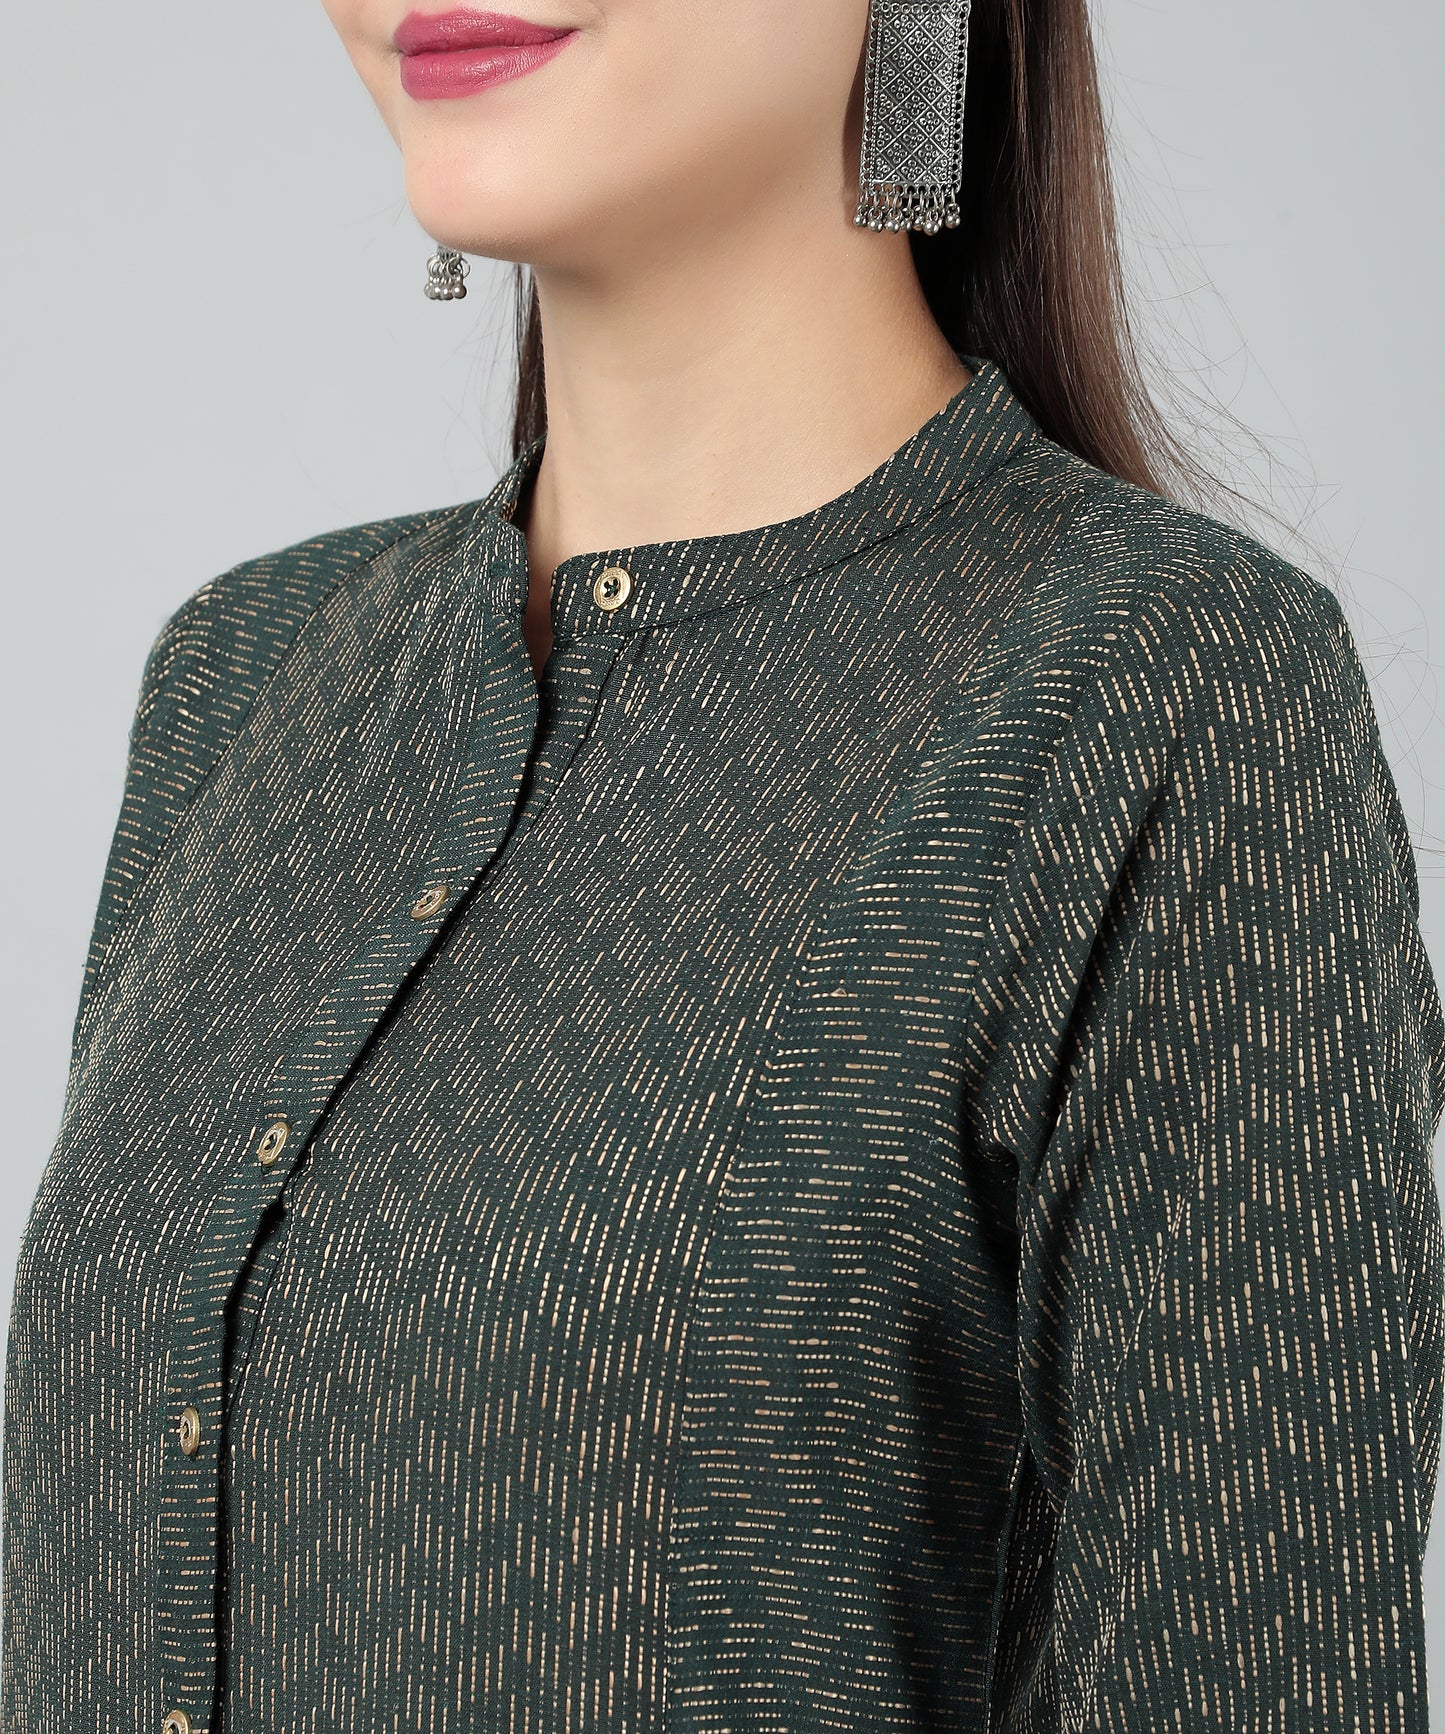 Self Weaved A-line Dress for Women Open Button Design,Green